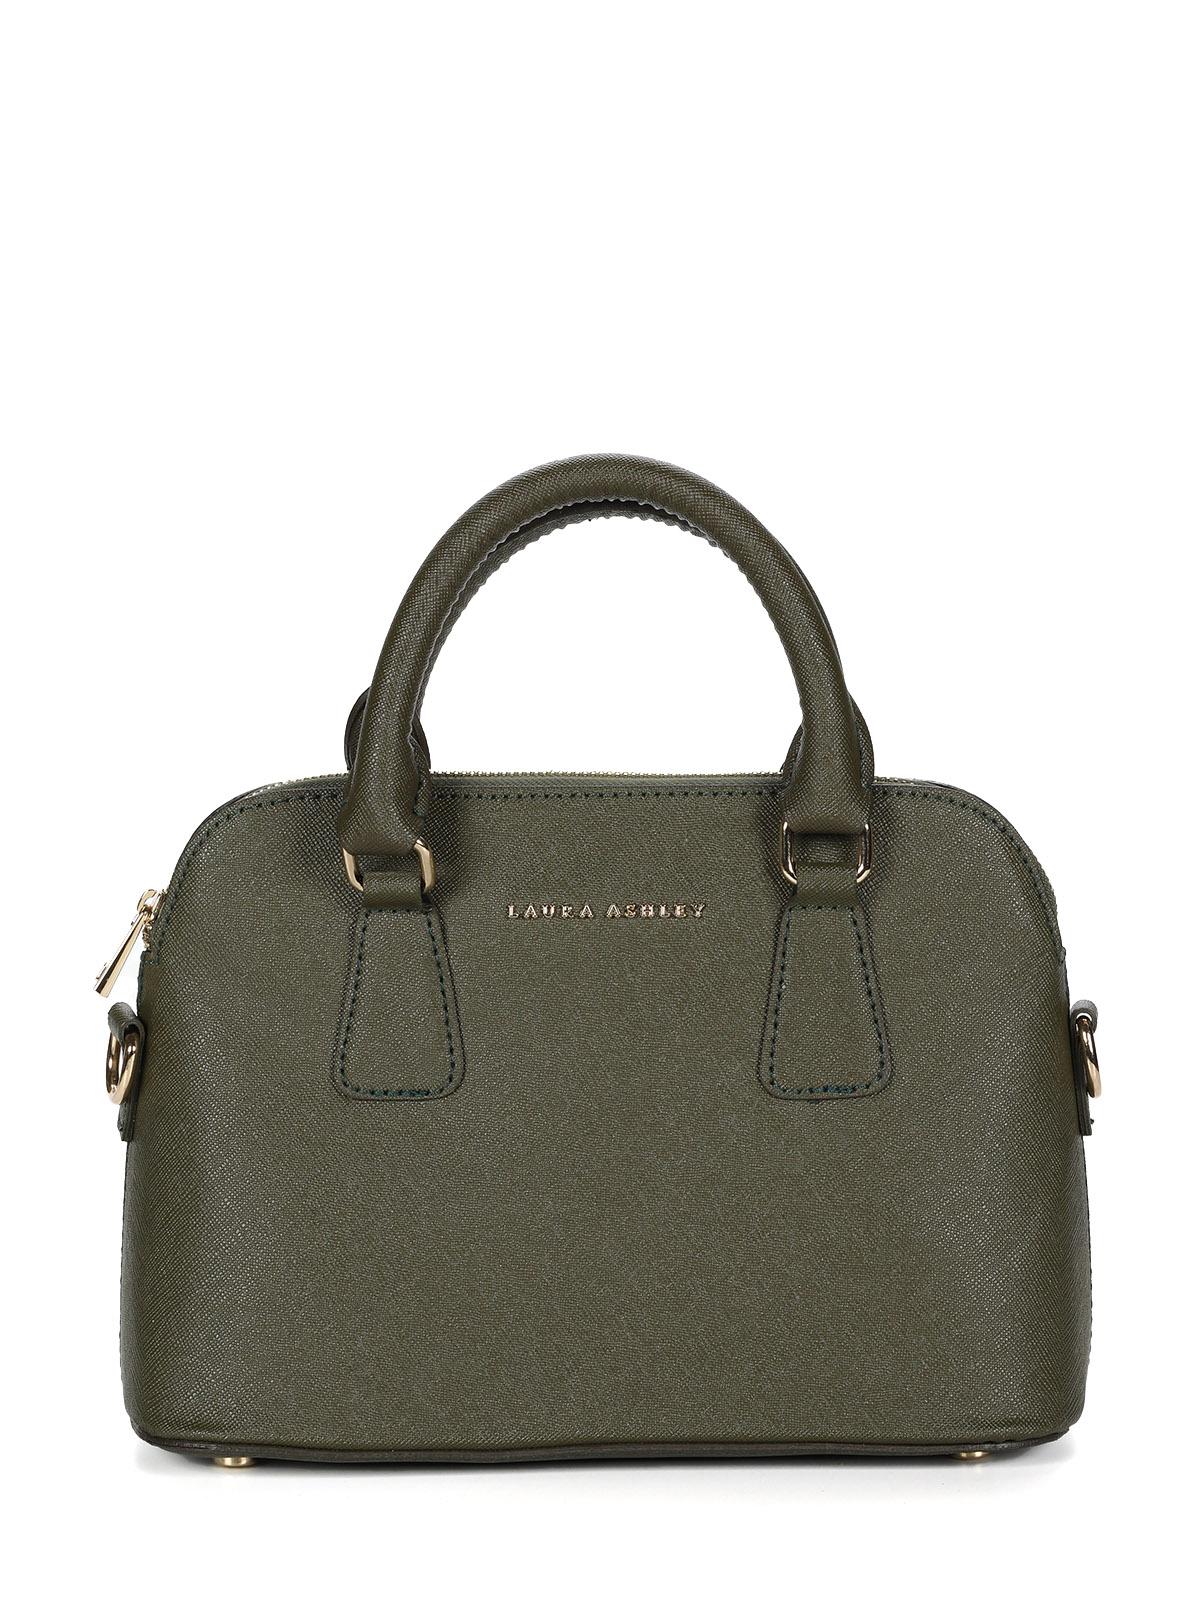 Женская сумка Laura Ashley, зеленая, цвет зеленый, размер ONE SIZE - фото 1